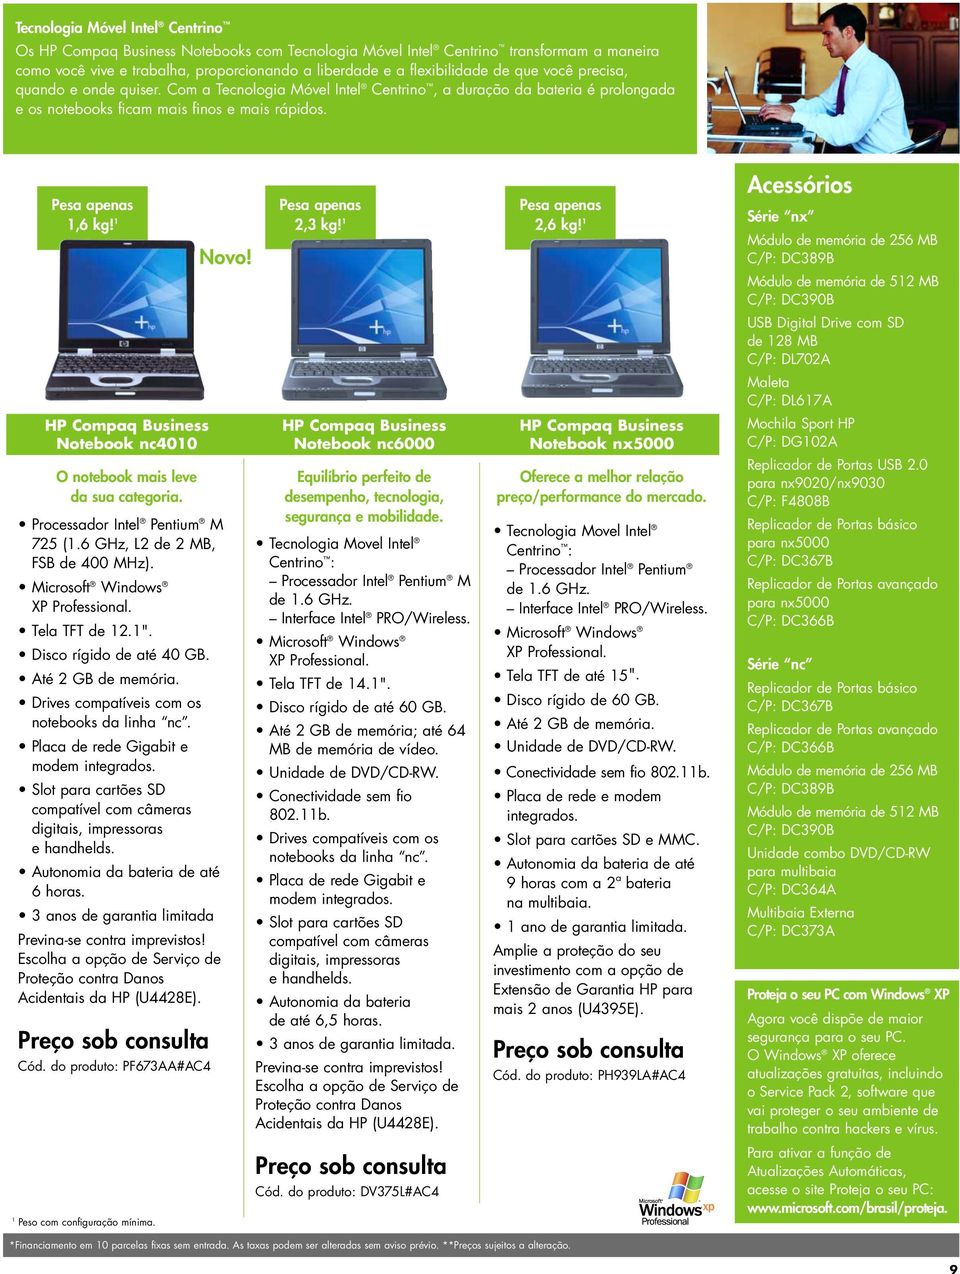 Pesa apenas Pesa apenas Pesa apenas 1,6 kg! 1 2,3 kg! 1 2,6 kg! 1 HP Compaq Business Notebook nc4010 O notebook mais leve da sua categoria. Processador Intel Pentium M 725 (1.